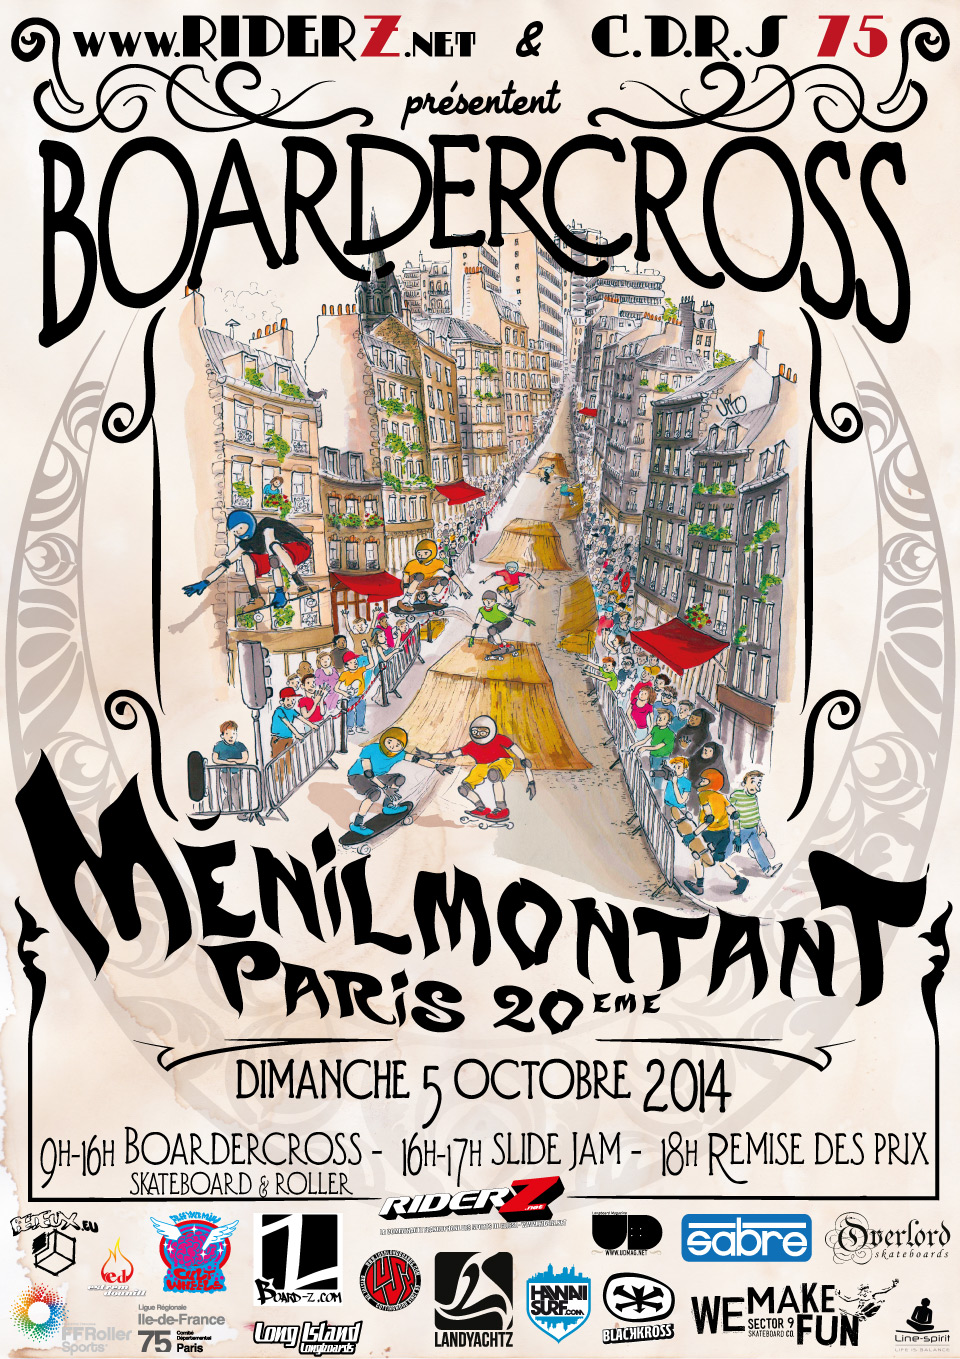 Affiche Riderz Boardercross de ménilmontant, paris 20